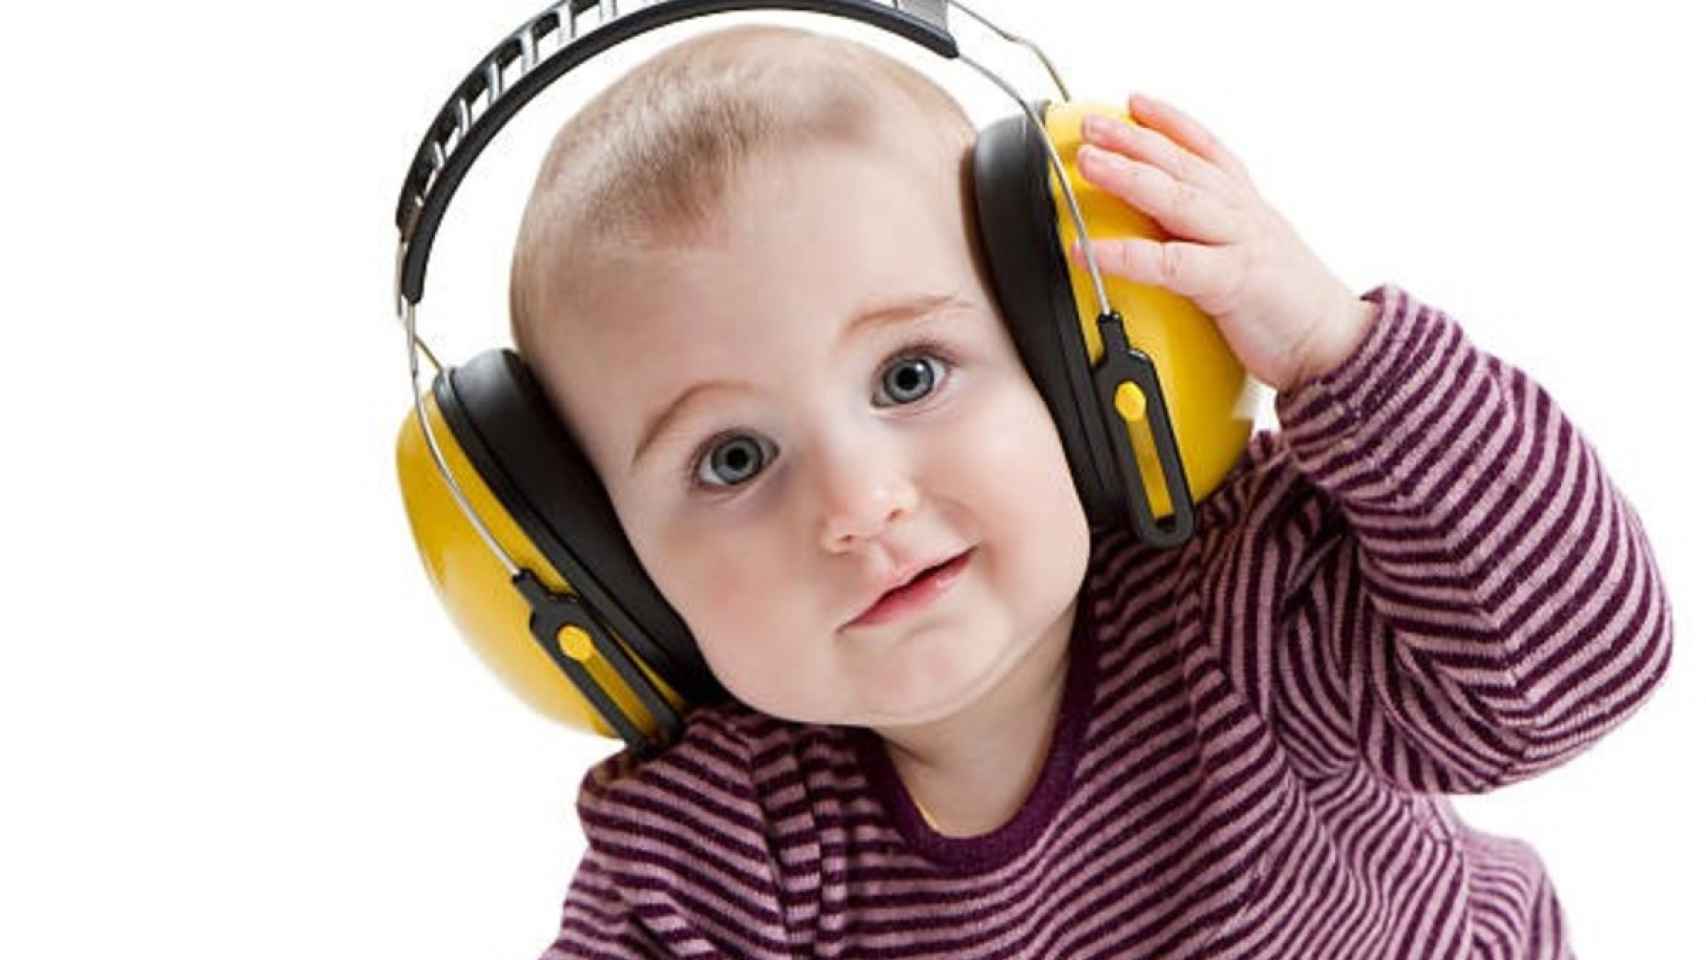 Las mejores orejeras anti-ruido para proteger a los bebés